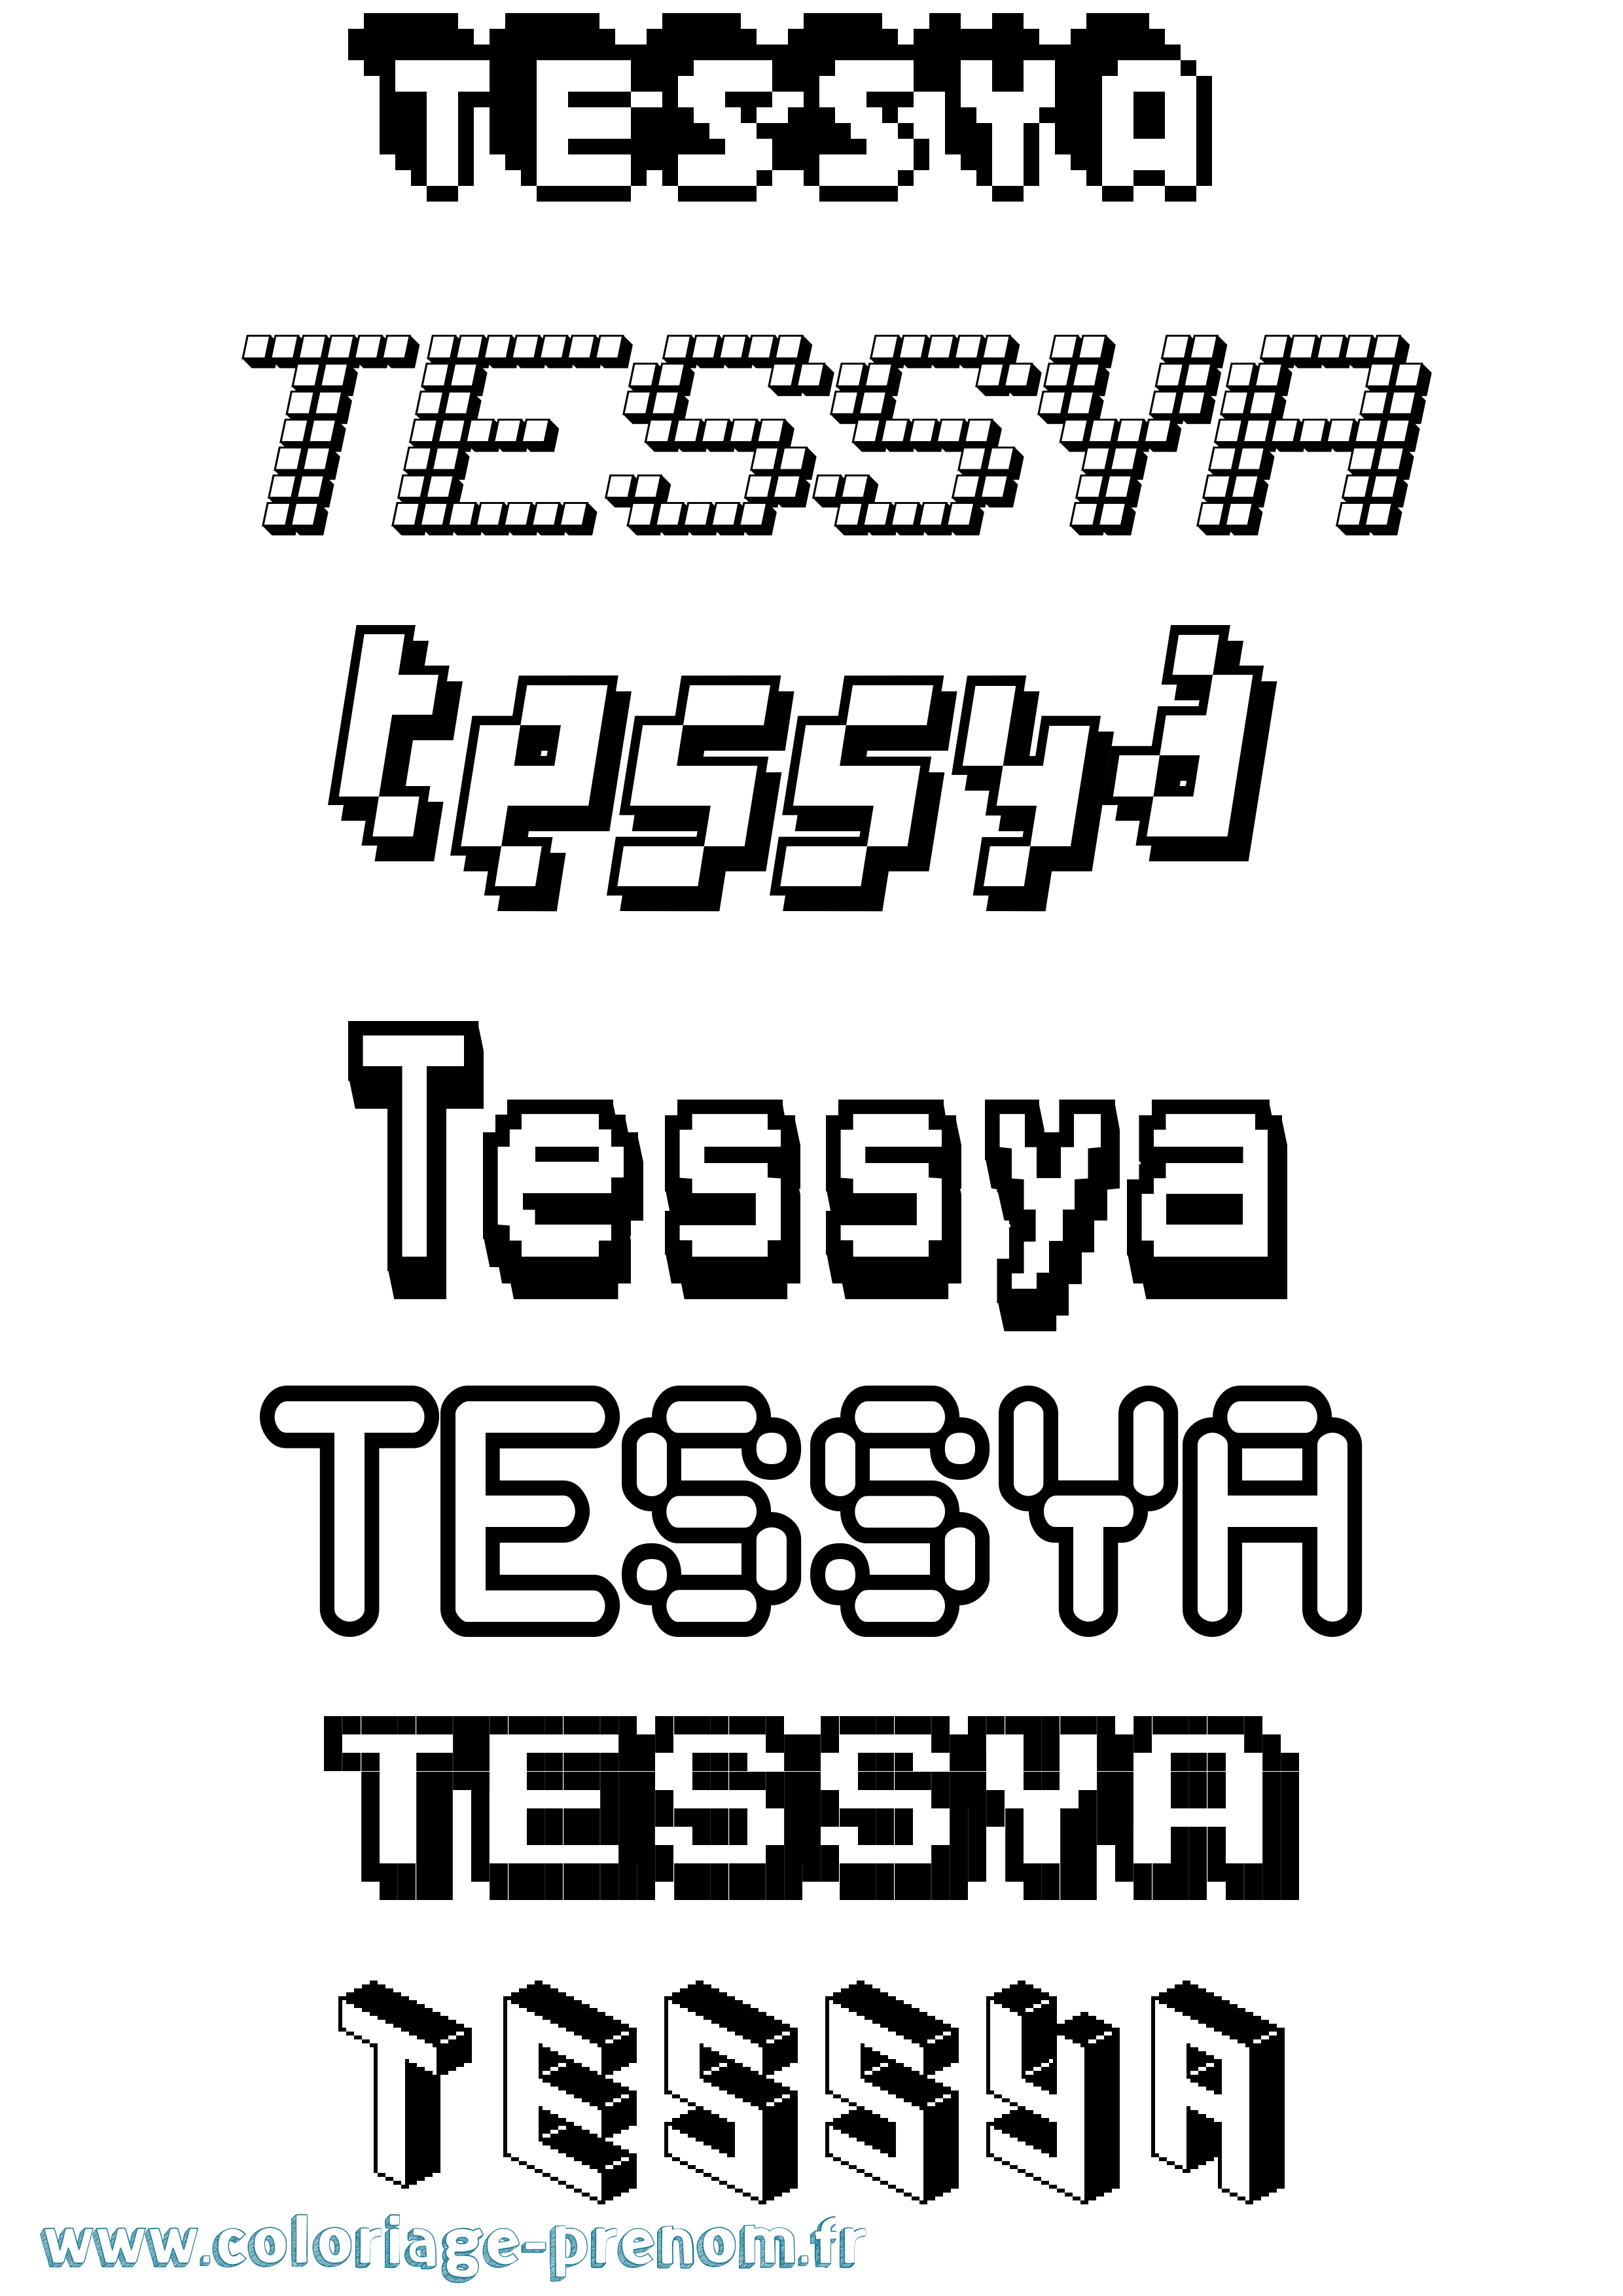 Coloriage prénom Tessya Pixel